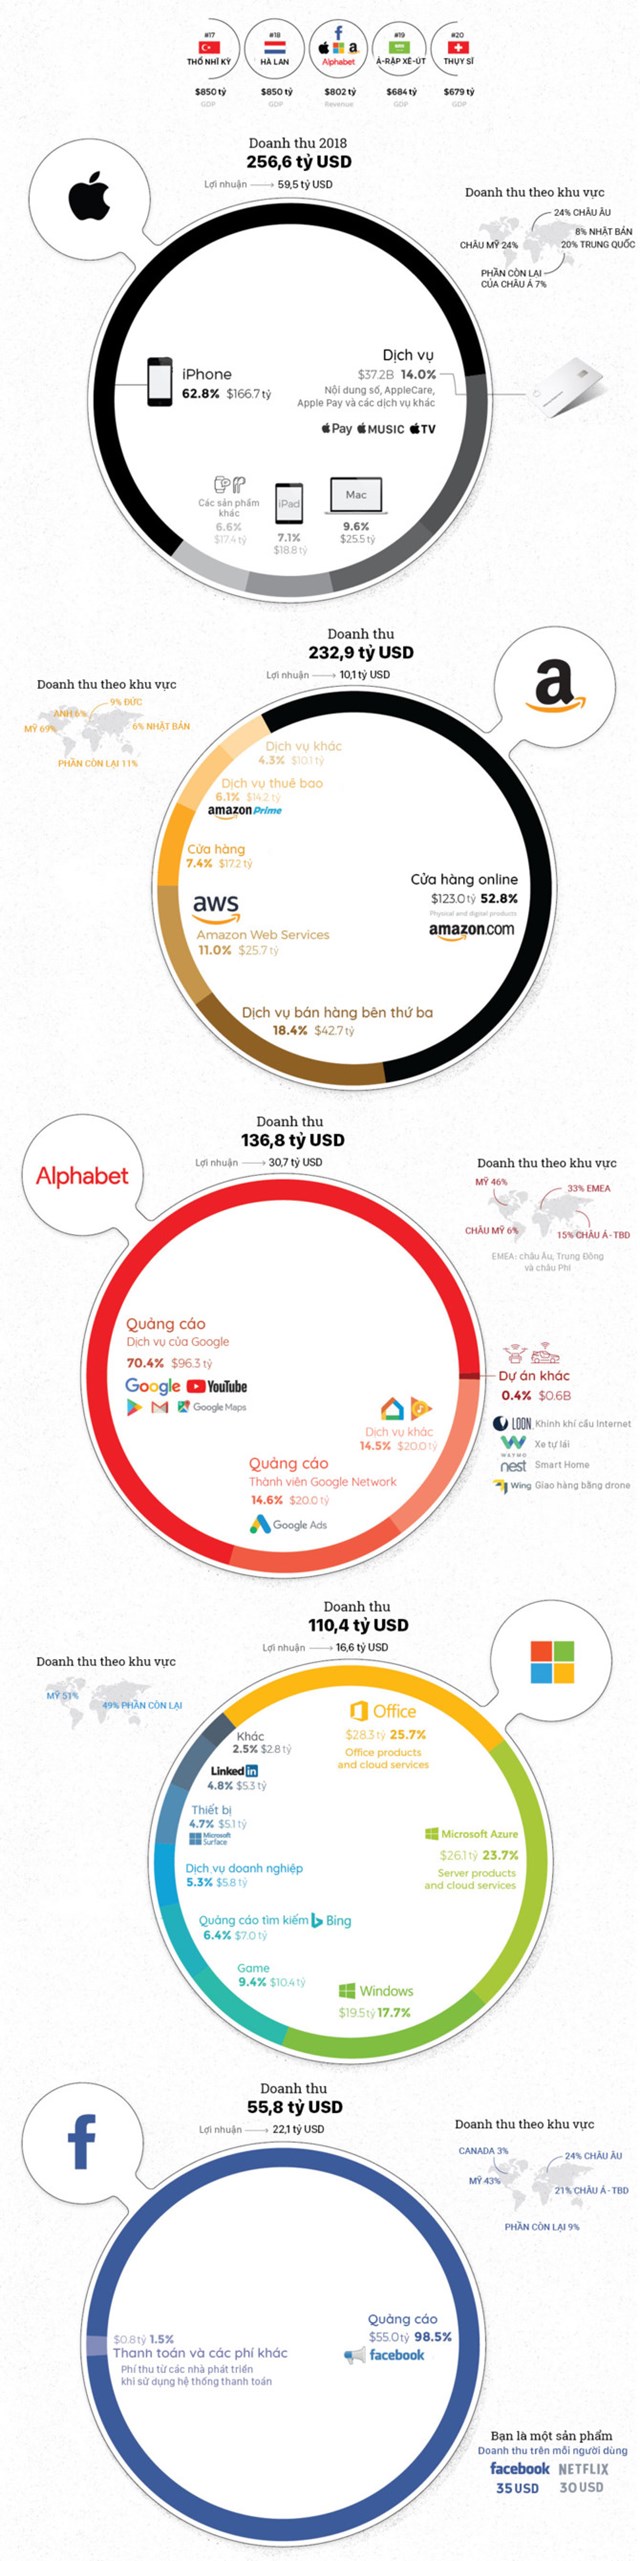 [Infographic] Các công ty công nghệ Mỹ kiếm tỷ USD từ đâu - Ảnh 1